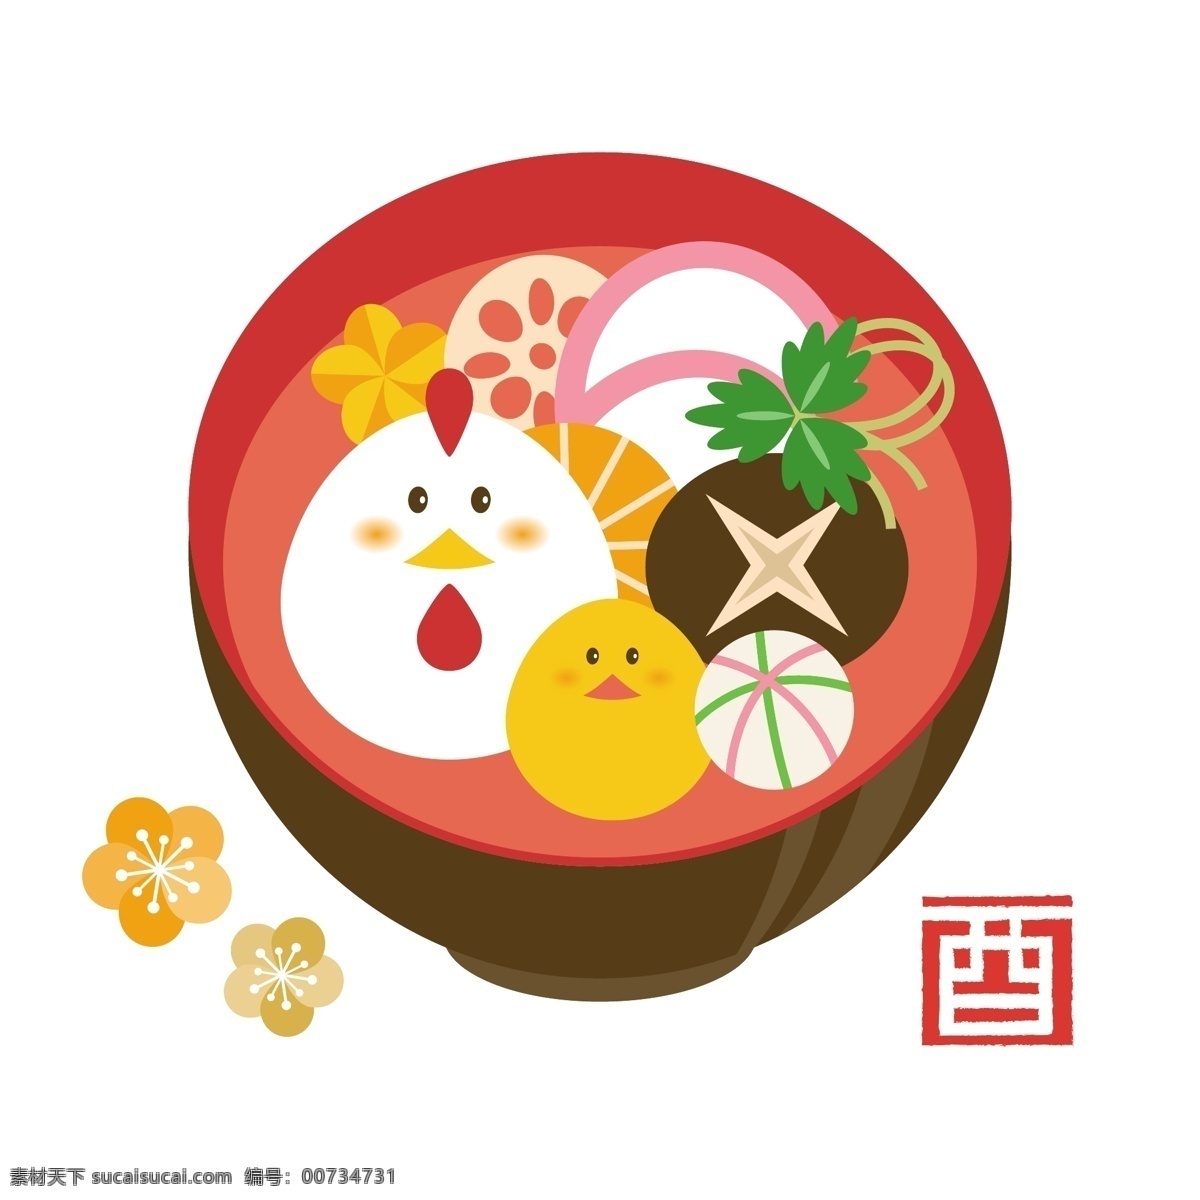 可爱 日式 拉面 卡通 泡面 面条 矢量 碗 蘑菇 小鸡拉面 美食